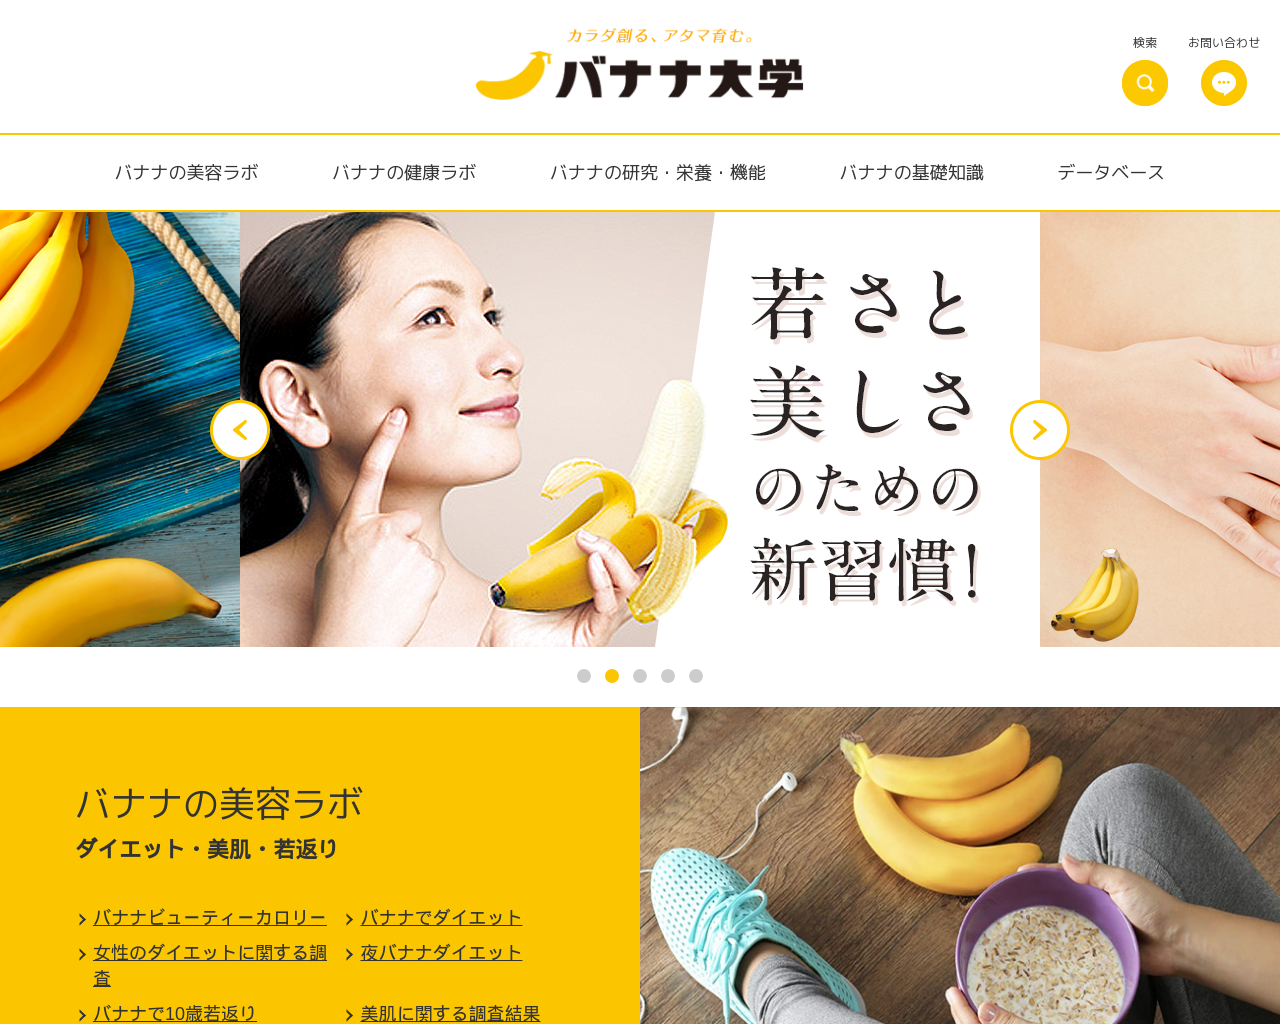 banana.co.jp